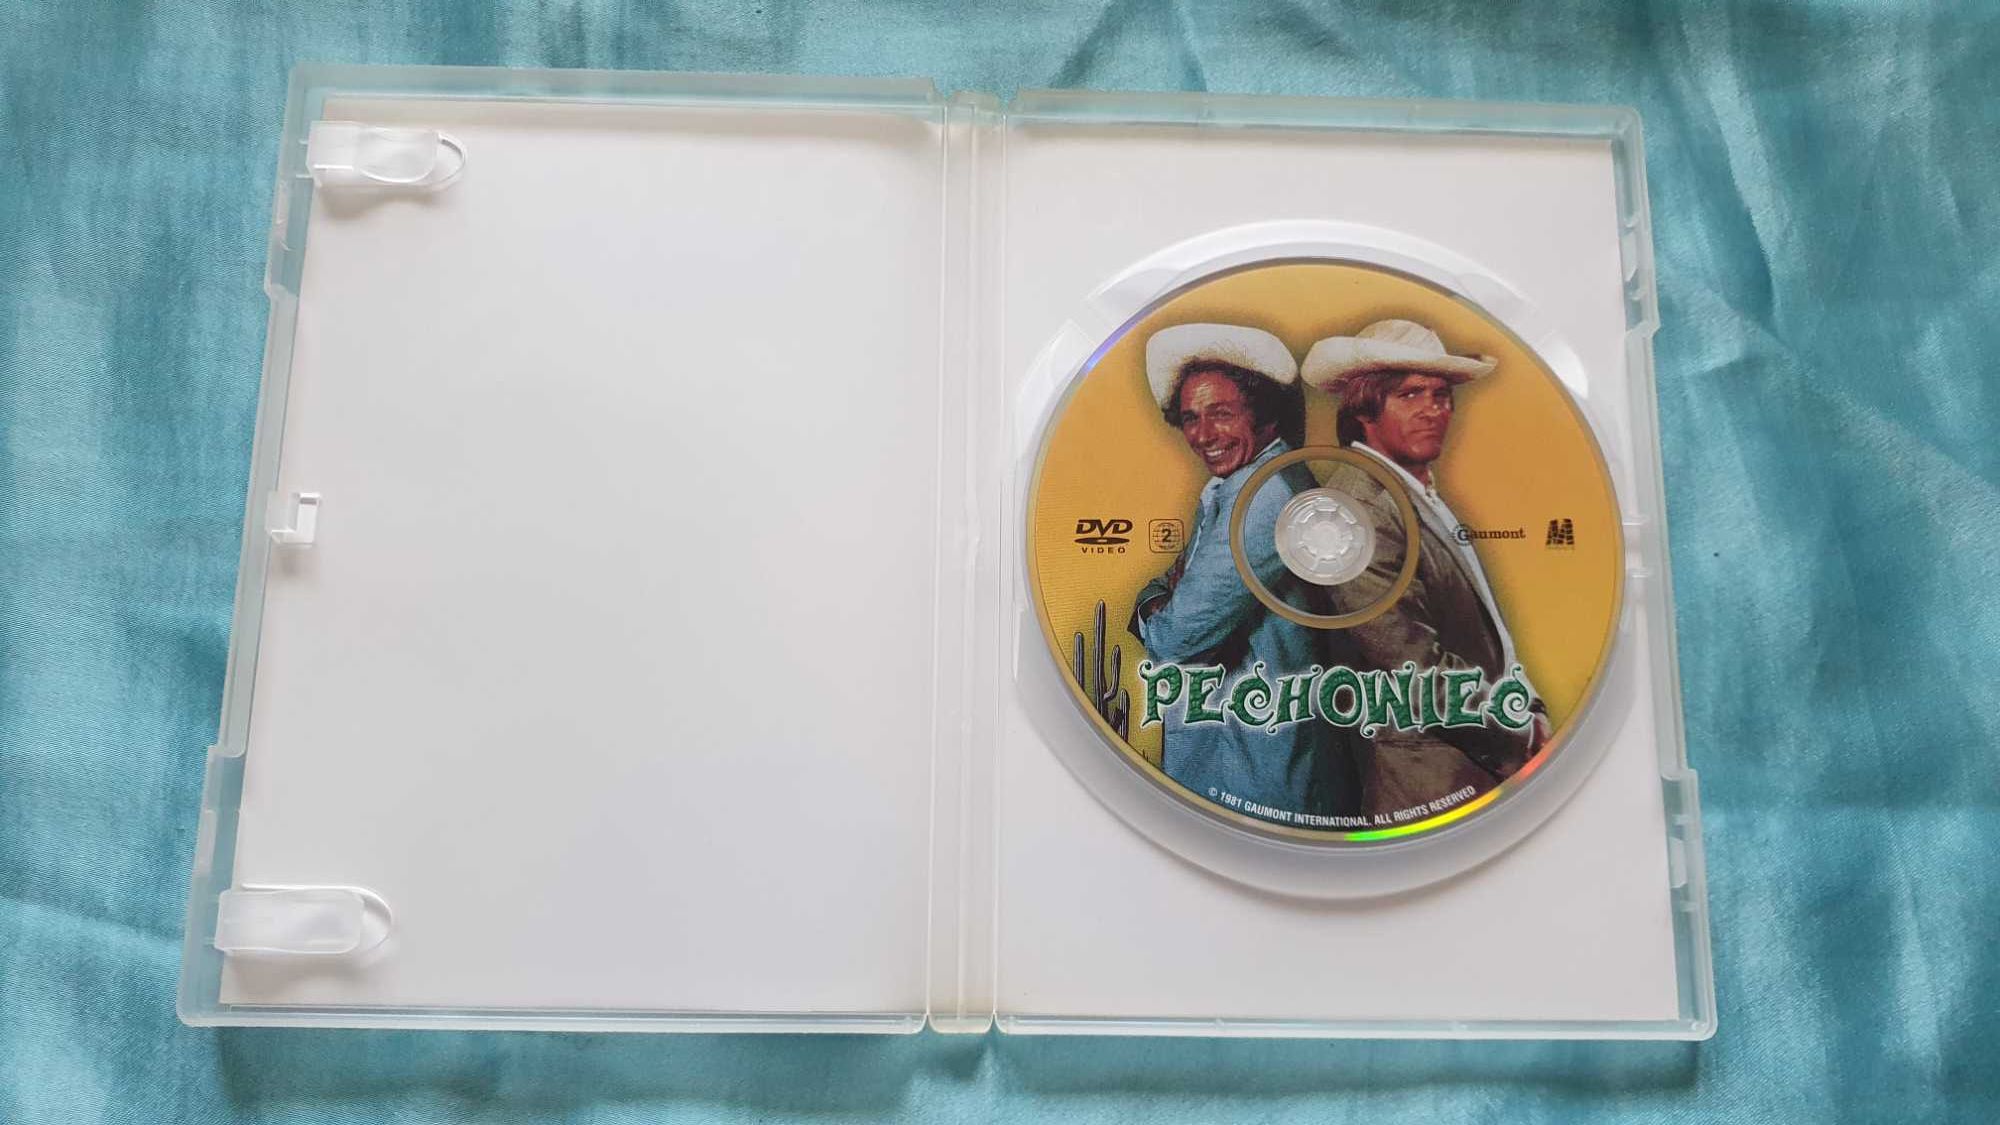 Pechowiec  DVD  Gerard Depardieu